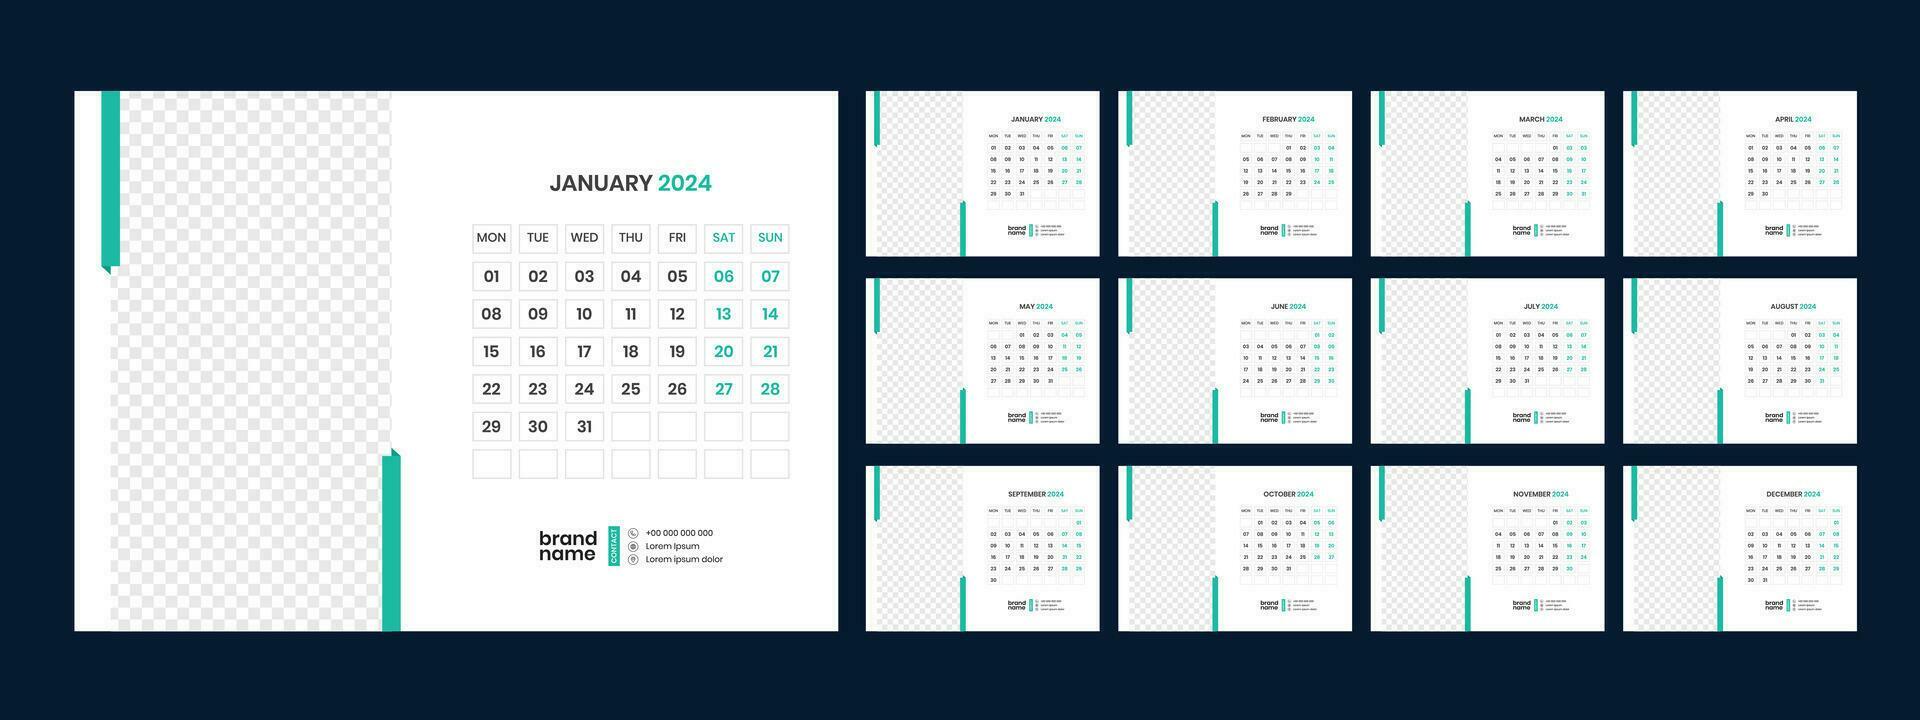 desk-calendar-template-2024-26134661-vector-art-at-vecteezy